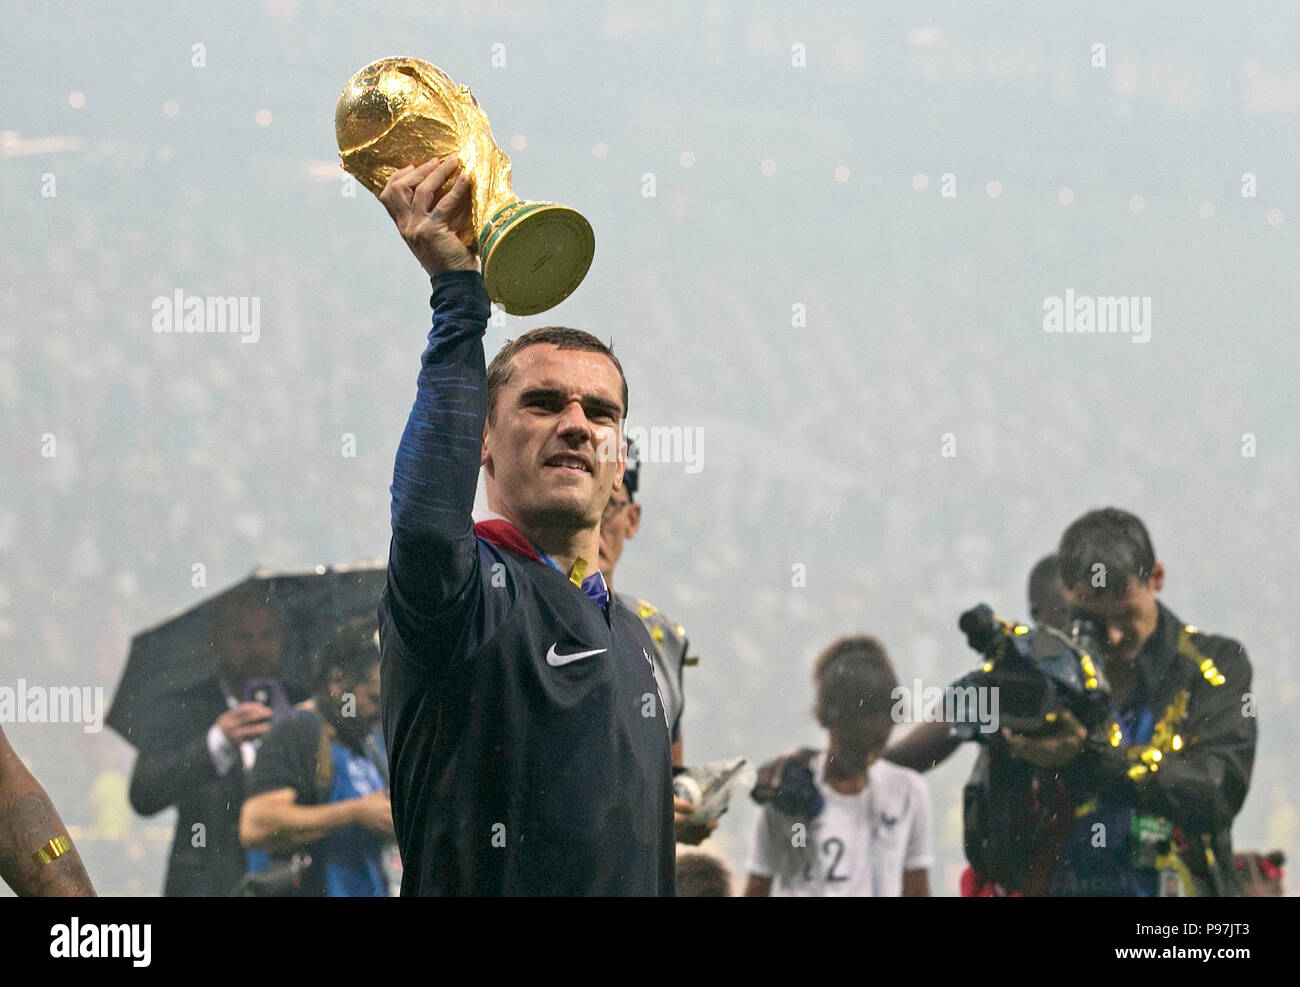 Antoine Griezmann La France célèbre avec le trophée après que son équipe a remporté la finale de la Coupe du Monde de la FIFA au stade Luzhniki de Moscou. Banque D'Images